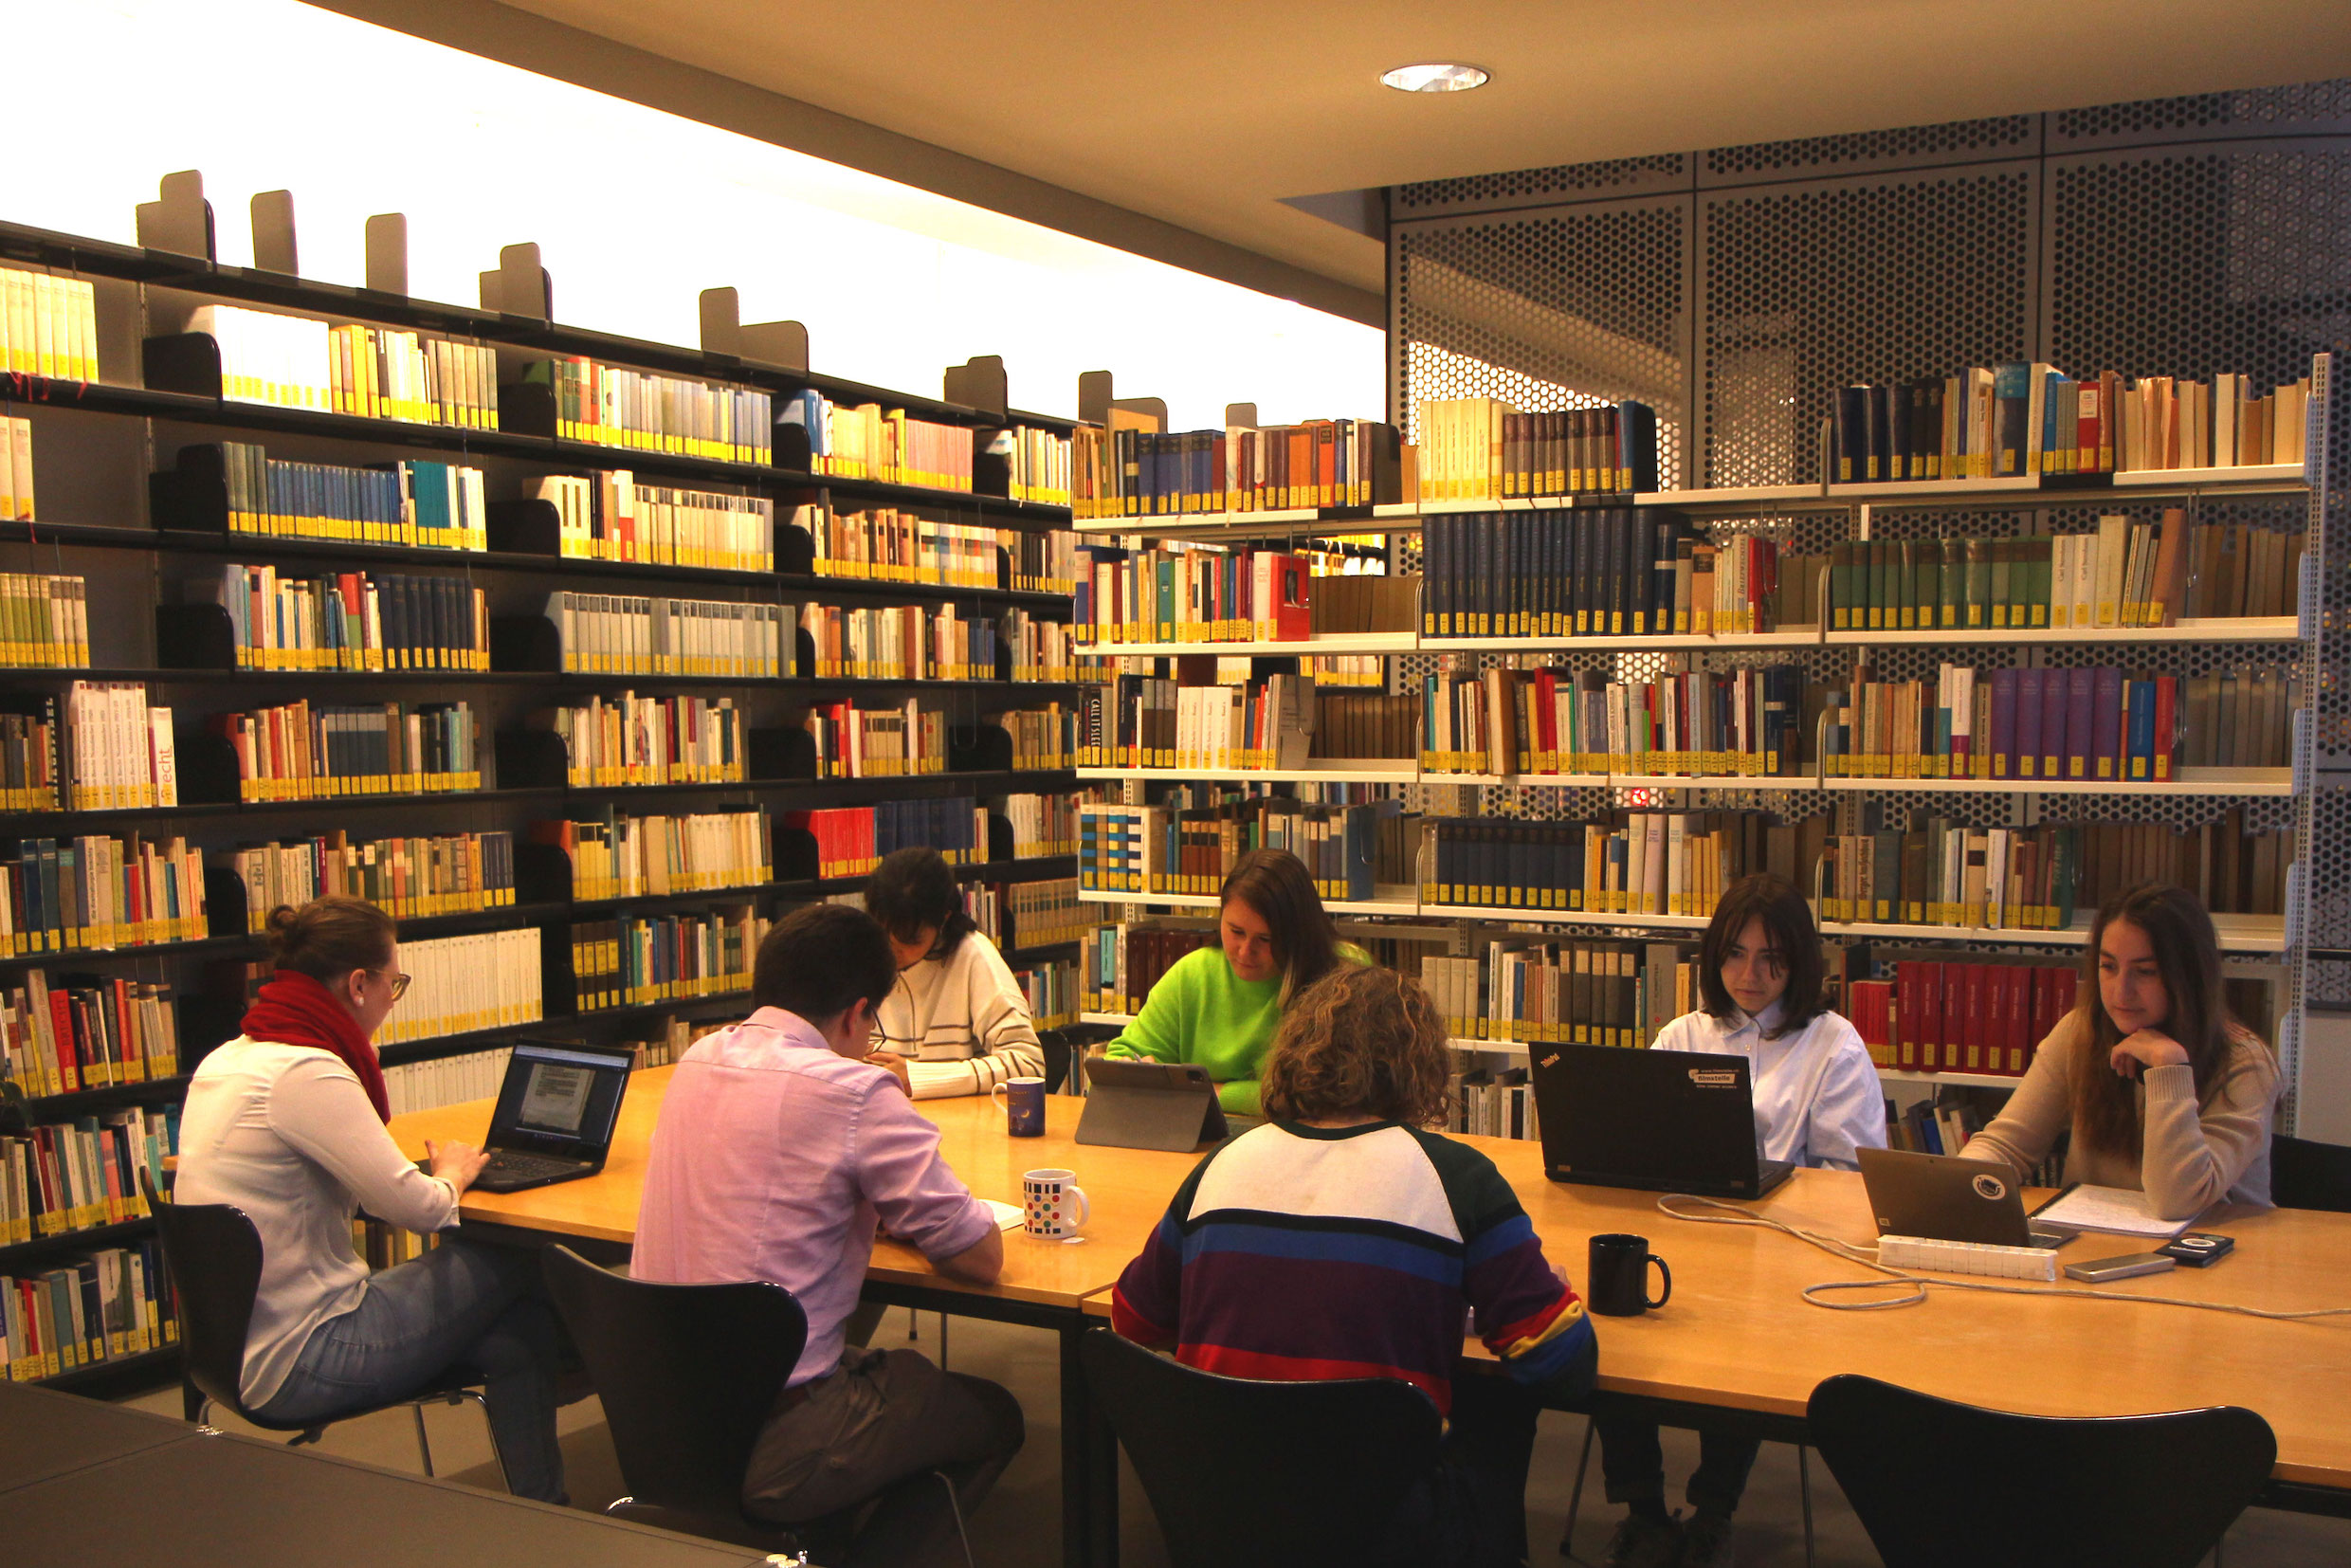 Das Bild zeigt eine Gruppe von Studierenden in der Bibliothek am Deutschen Seminar. Sie sitzen an einem grossen Tisch und arbeiten konzentriert. Im Hintergrund sind grosse Bücherwände zu sehen.